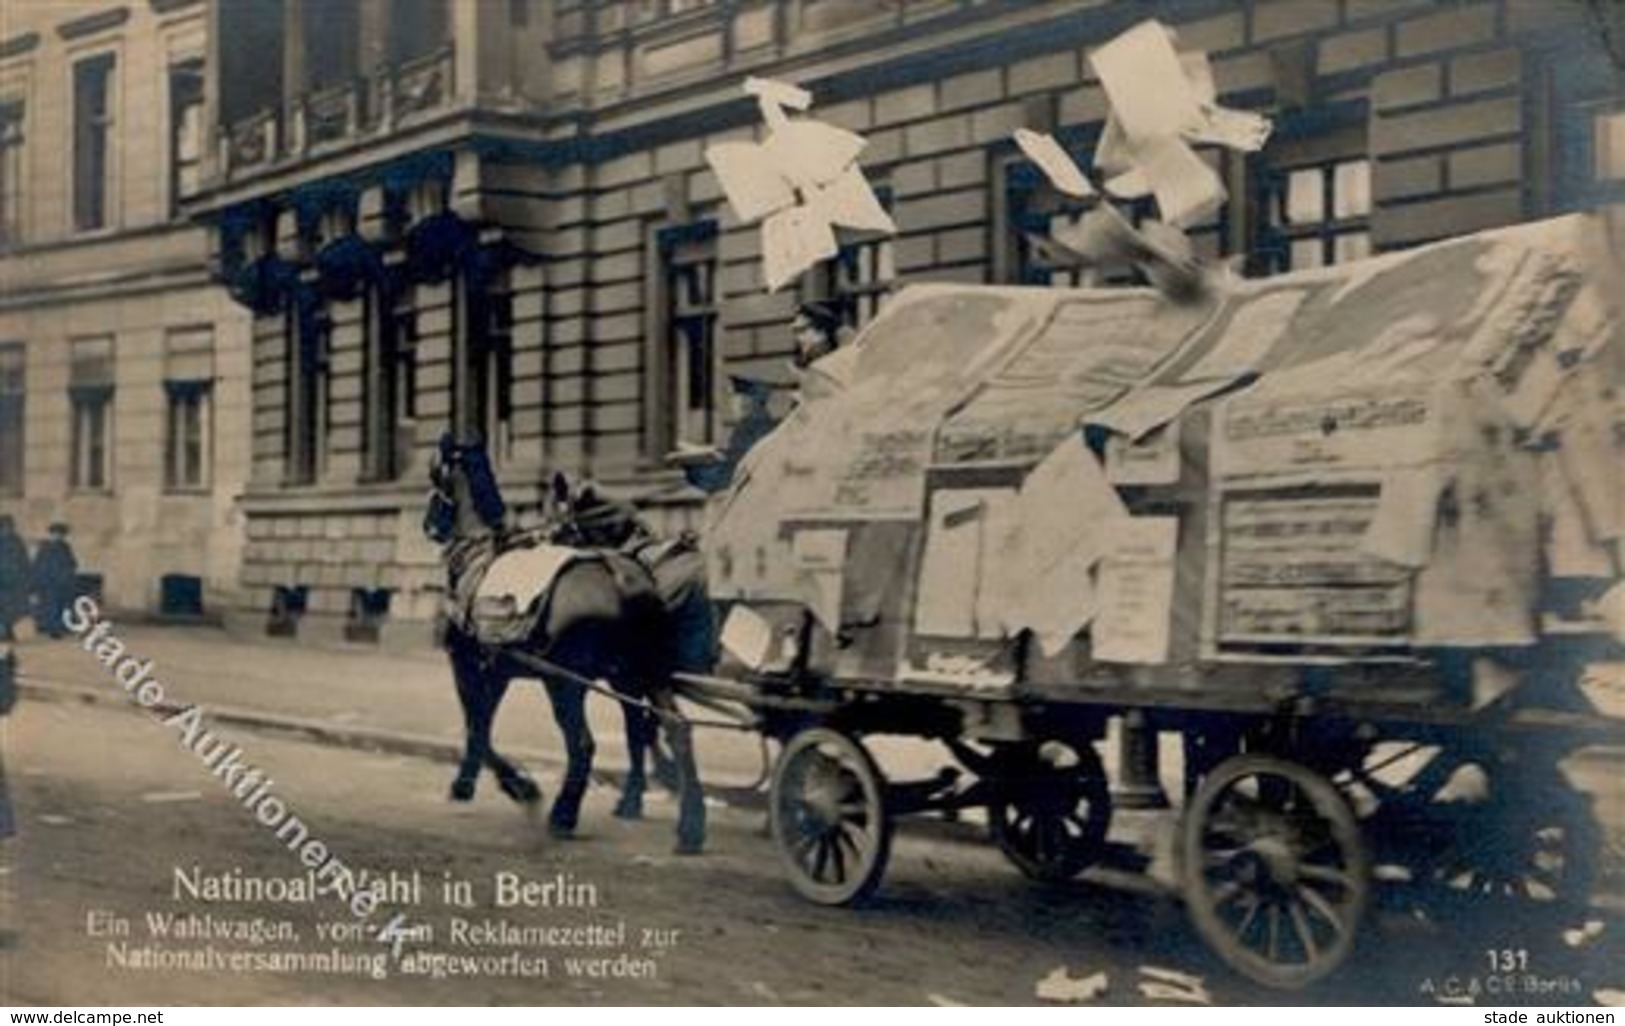 REVOLUTION BERLIN 1919 - NATIONAL-WAHL In Berlin - Ein Wahlwagen Von Dem Reklamezettel Zur Nationalversammlung Abgeworfe - Warships